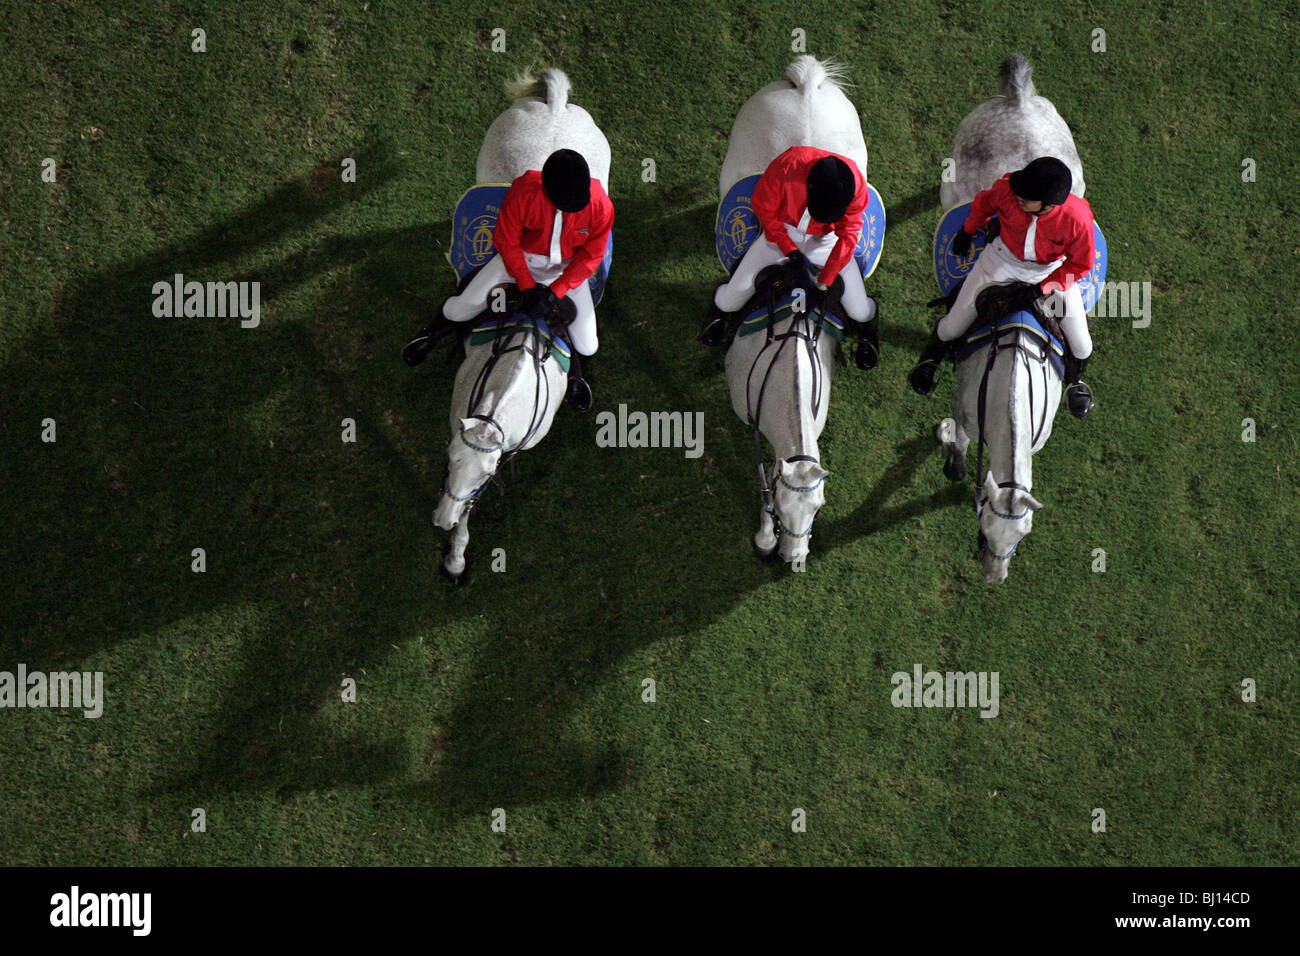 Aerial view of horses and riders, Hong Kong, China Stock Photo